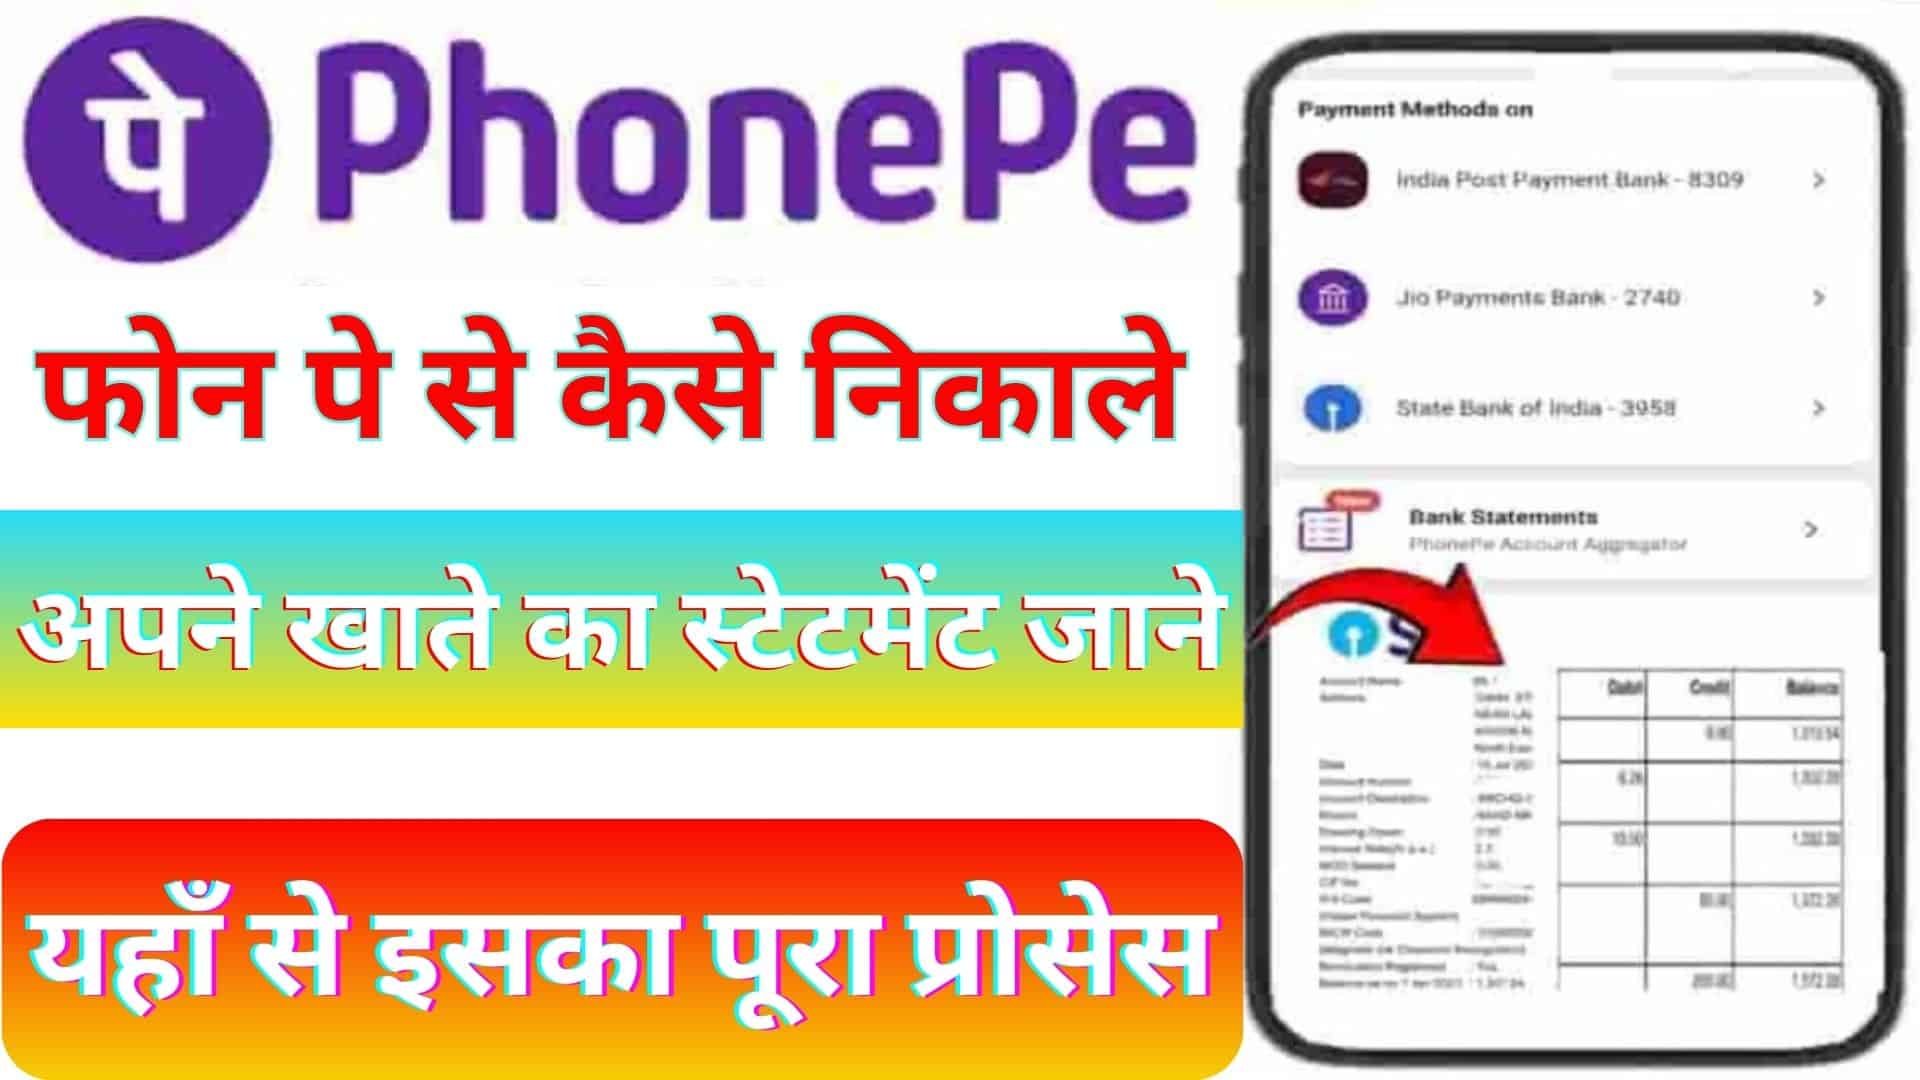 Phone Pe Se Bank Statement Kaise Nikale : अब Phone Pay App से निकाले अपने बैंक का स्टेटमेंट , नया फीचर हुआ लांच